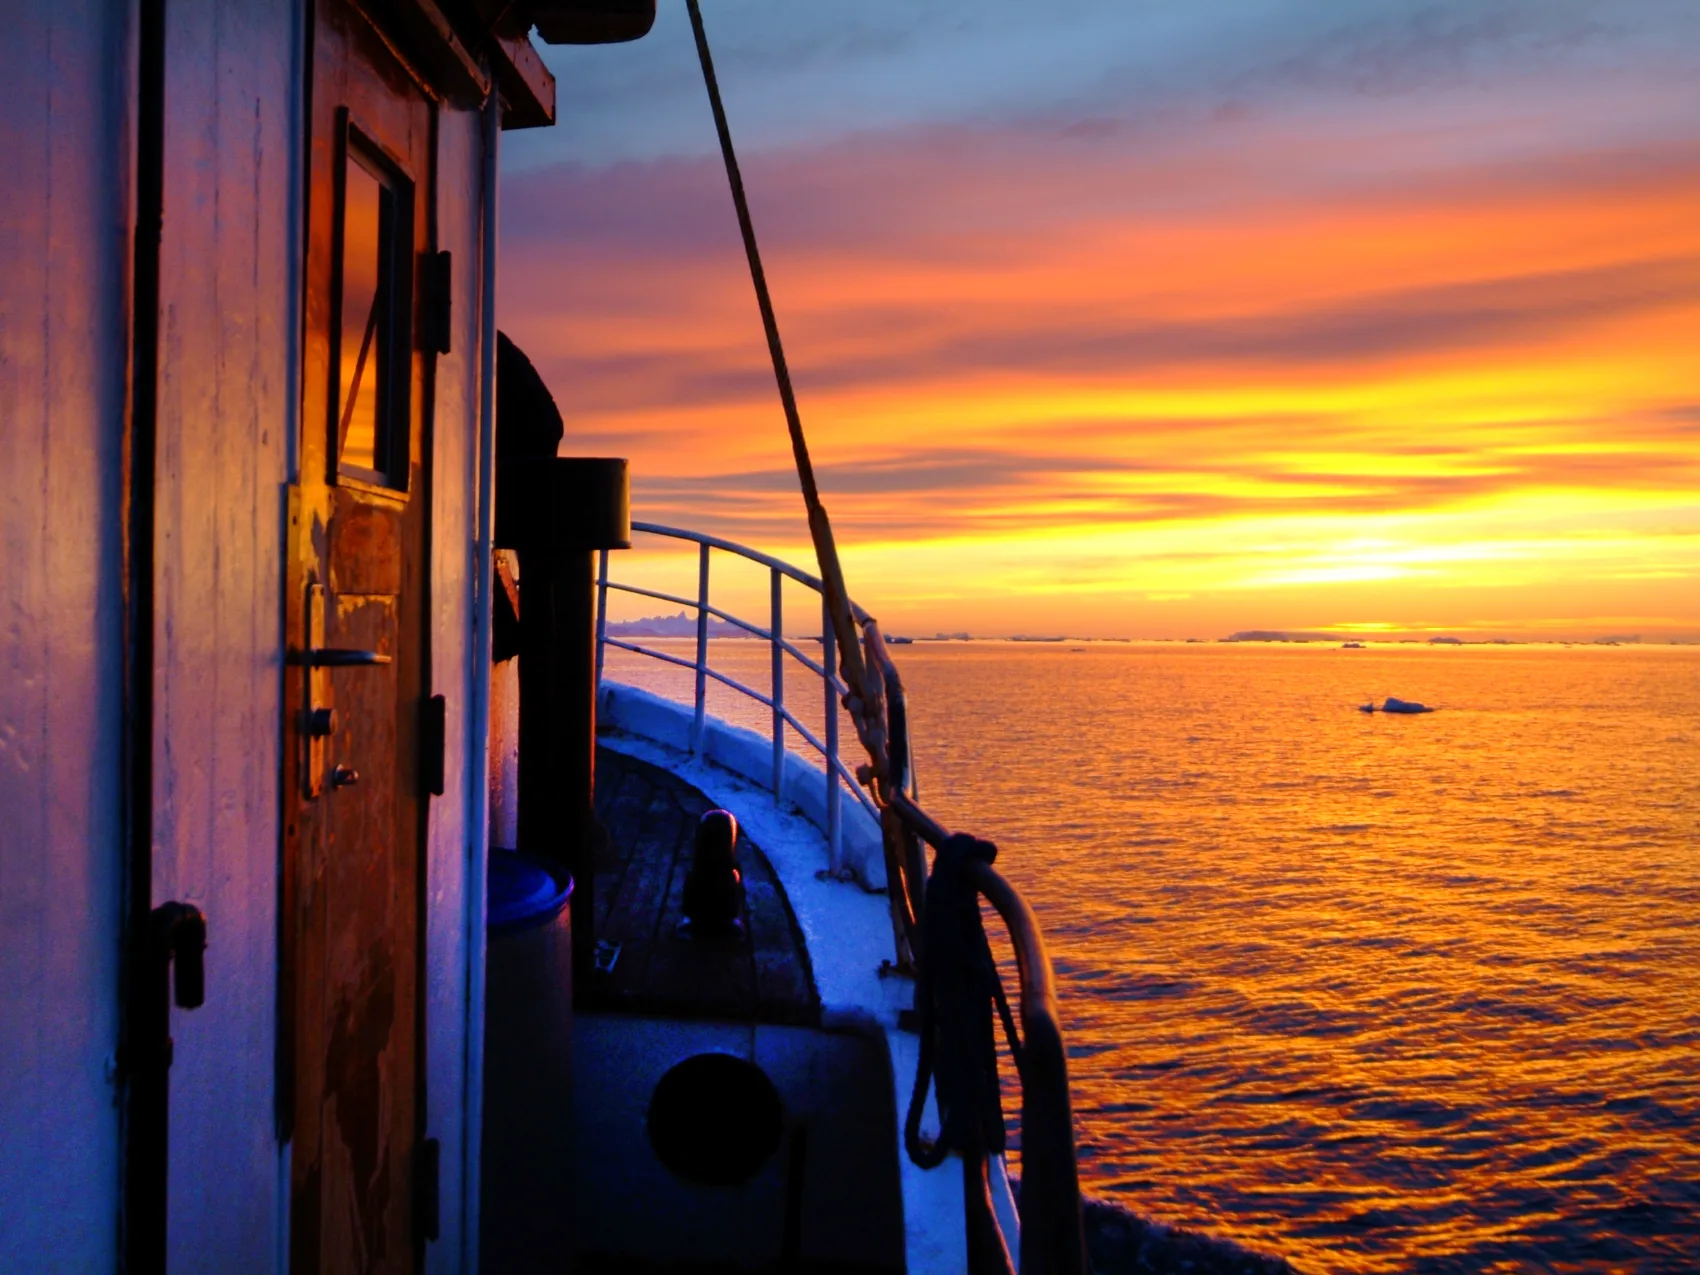 Ostgrönland Sonnenuntergang auf dem Boot, vereinzelte Eisberge schwimmen im Meer vor dem Bot, an dem seitlich vorbeigeschaut wird. Der Himmel leuchtet in Orange und Gelben Farben mit Wolken.